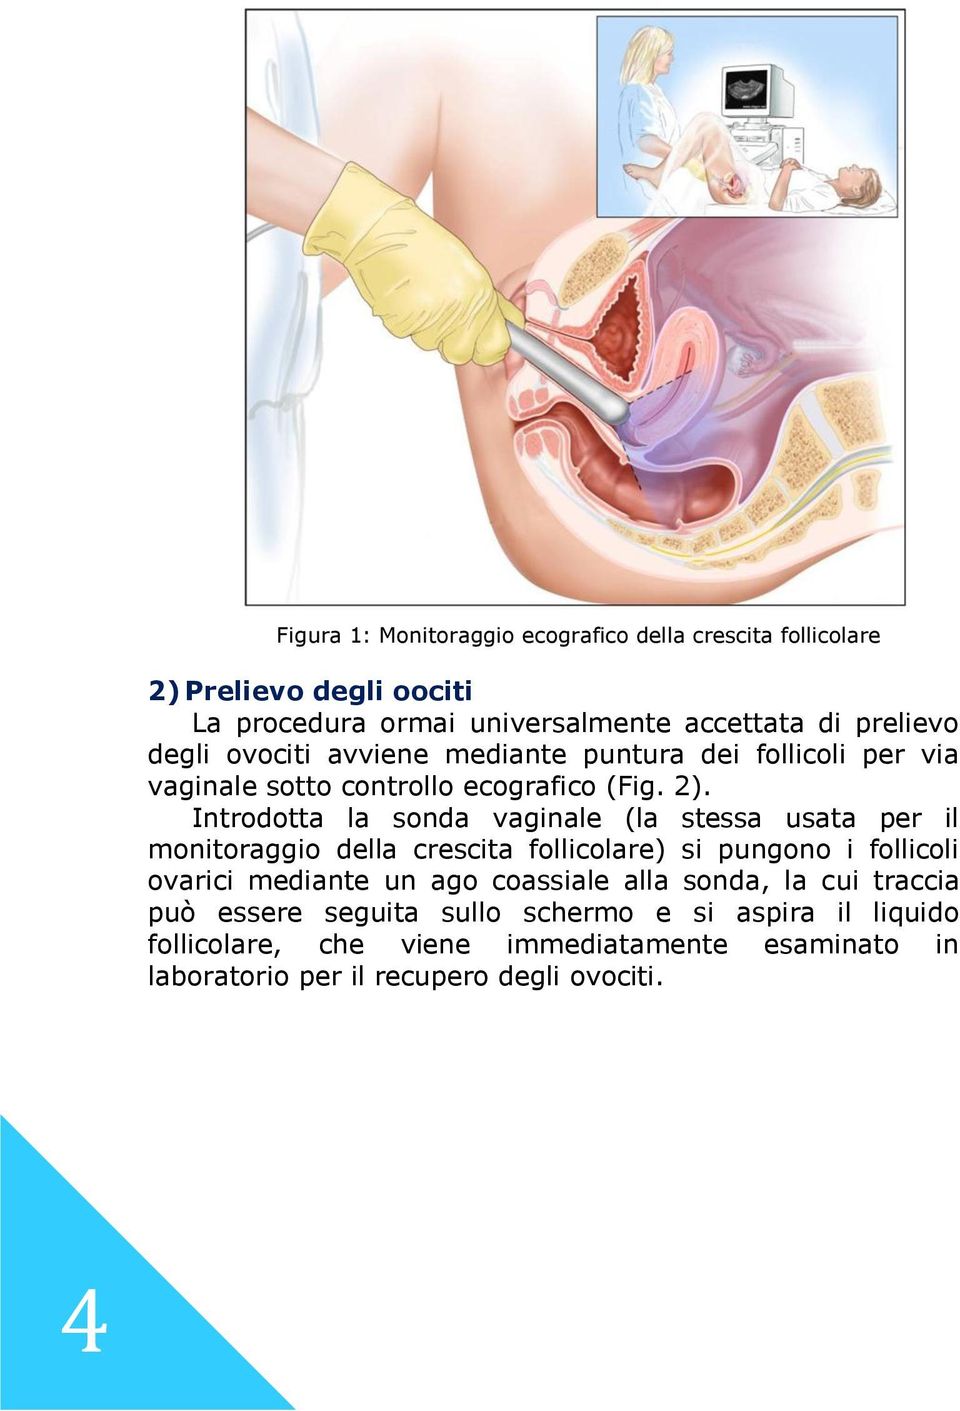 Introdotta la sonda vaginale (la stessa usata per il monitoraggio della crescita follicolare) si pungono i follicoli ovarici mediante un ago